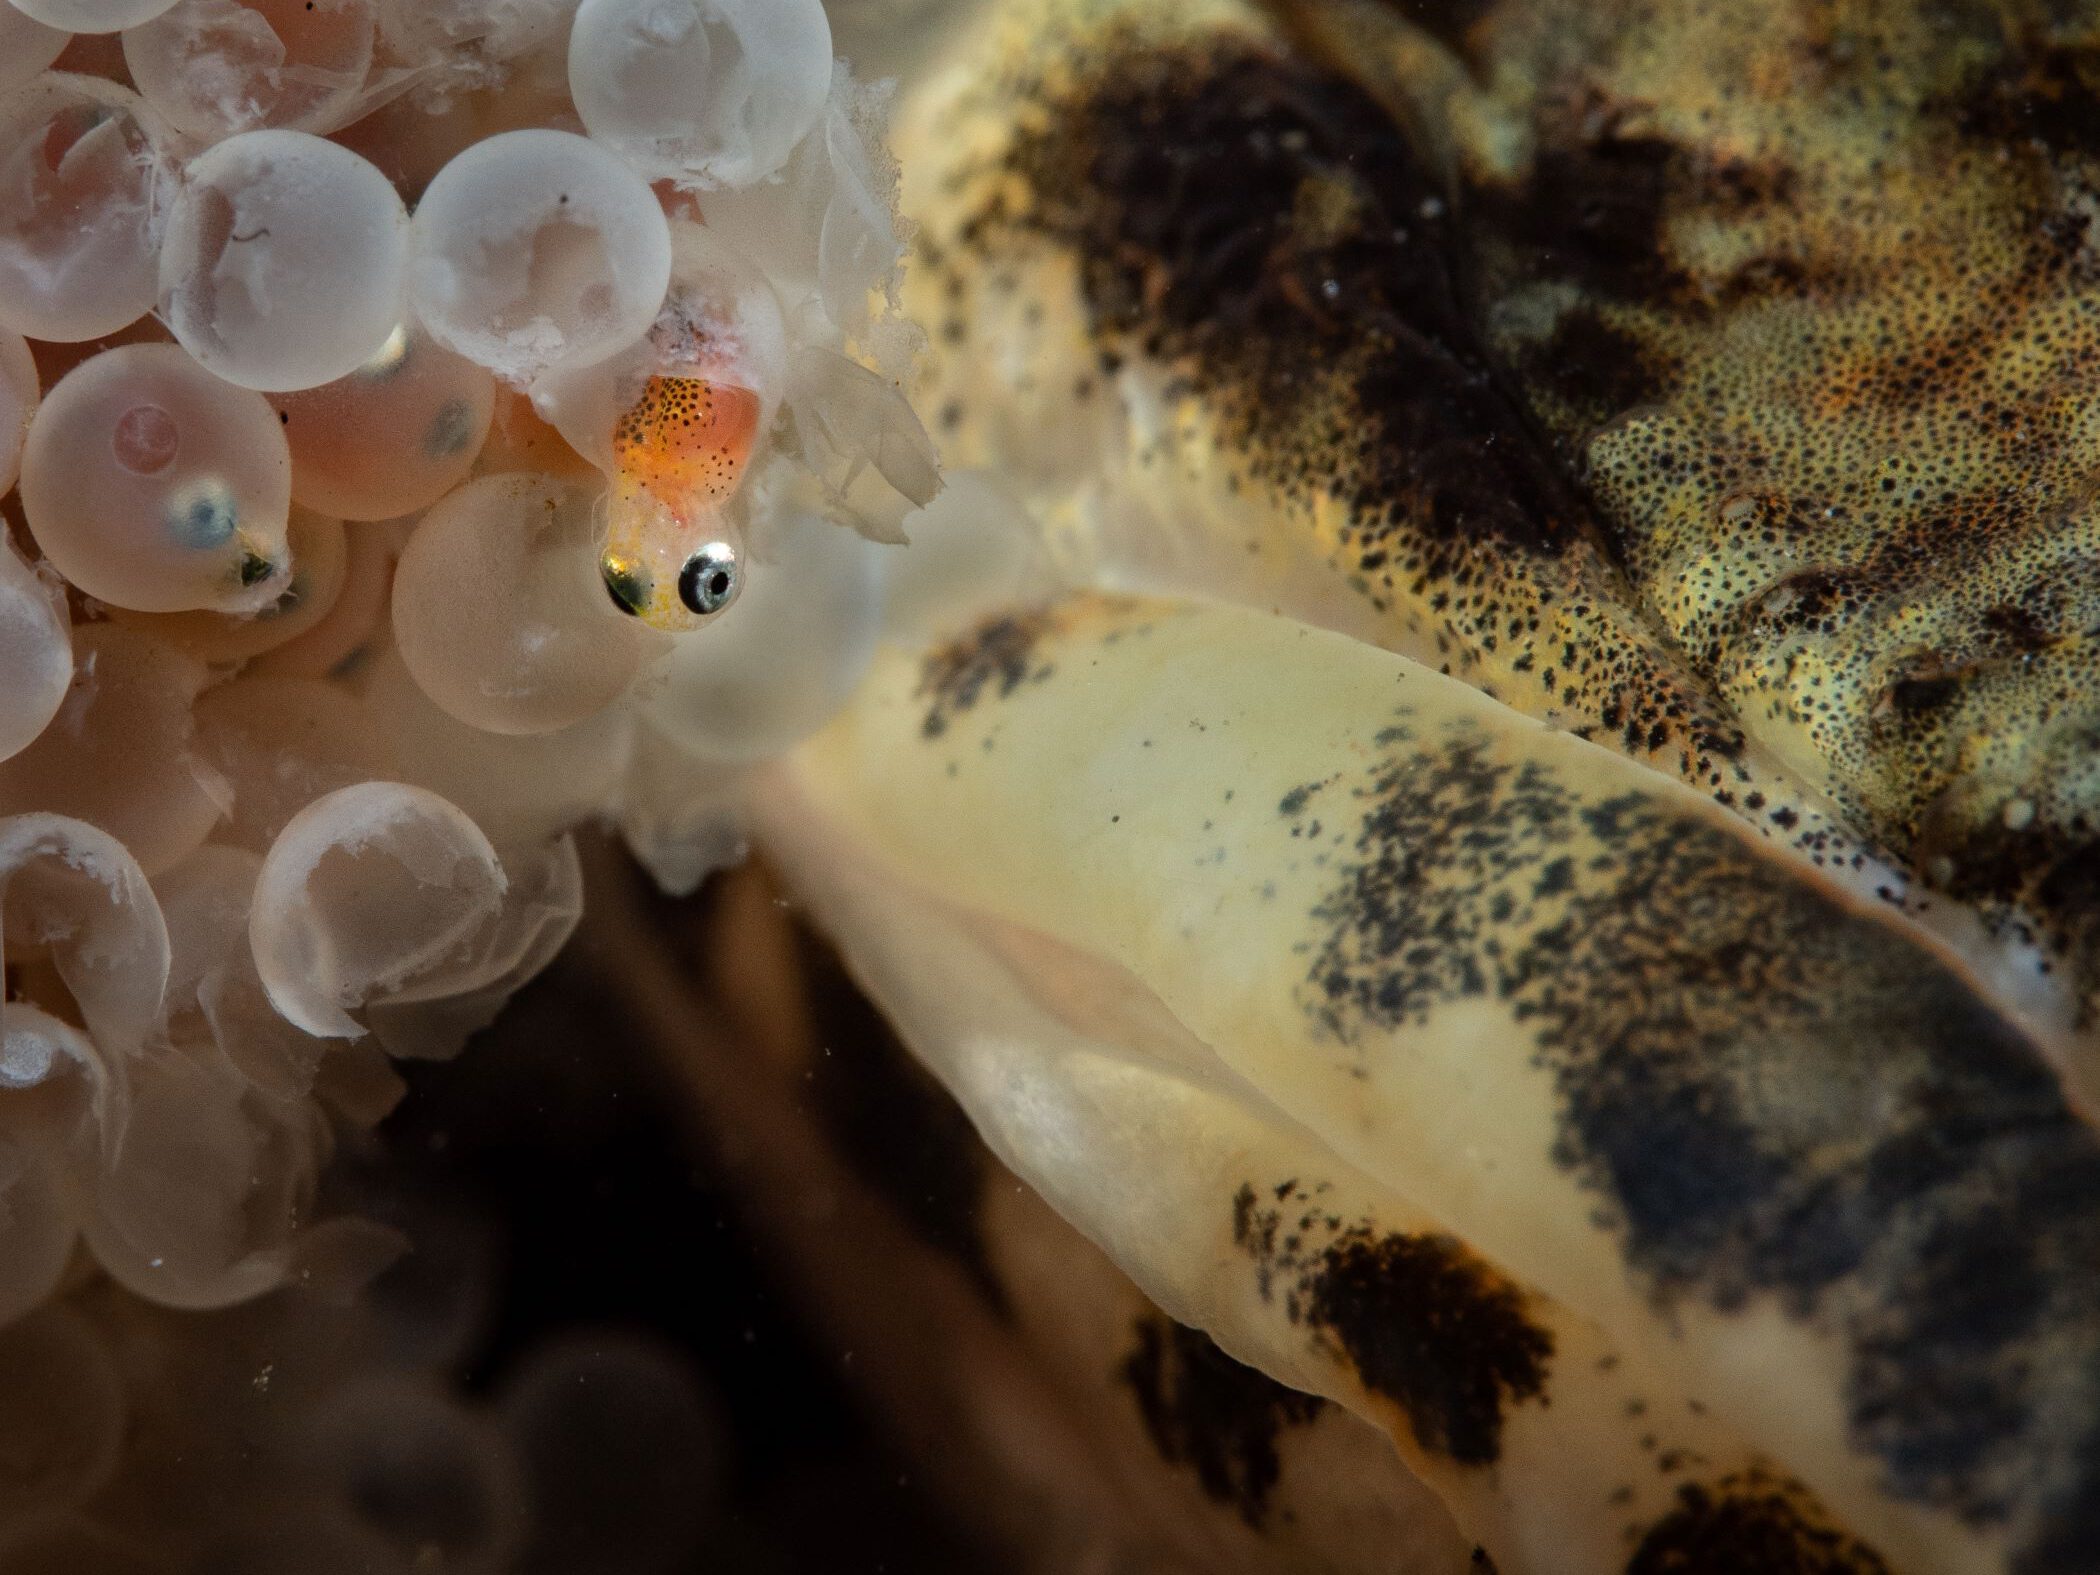 Baby zeedonderpad kruipt uit het ei onder toezicht van vader.
Foto: Marloes Otten